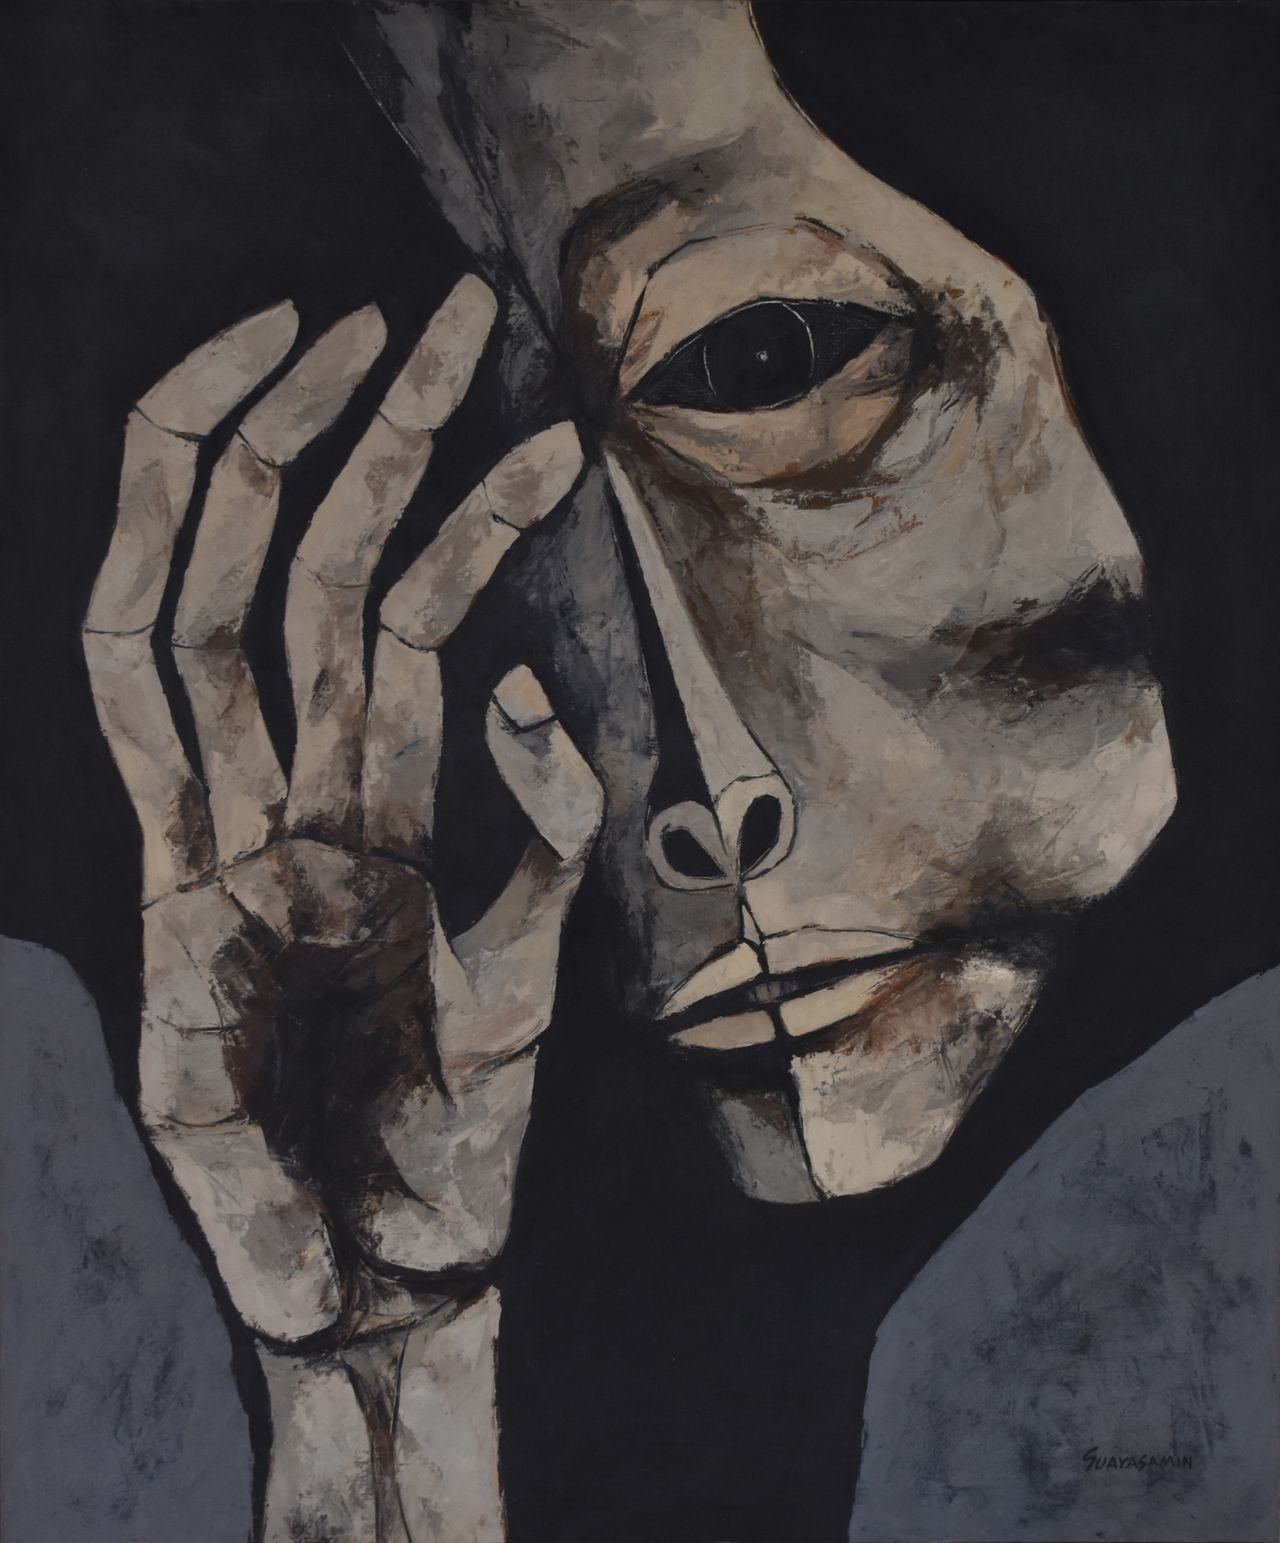 "Cabeza y mano" de Oswaldo Guayasamín en la galería Duque Arango. Cortesía de la galería